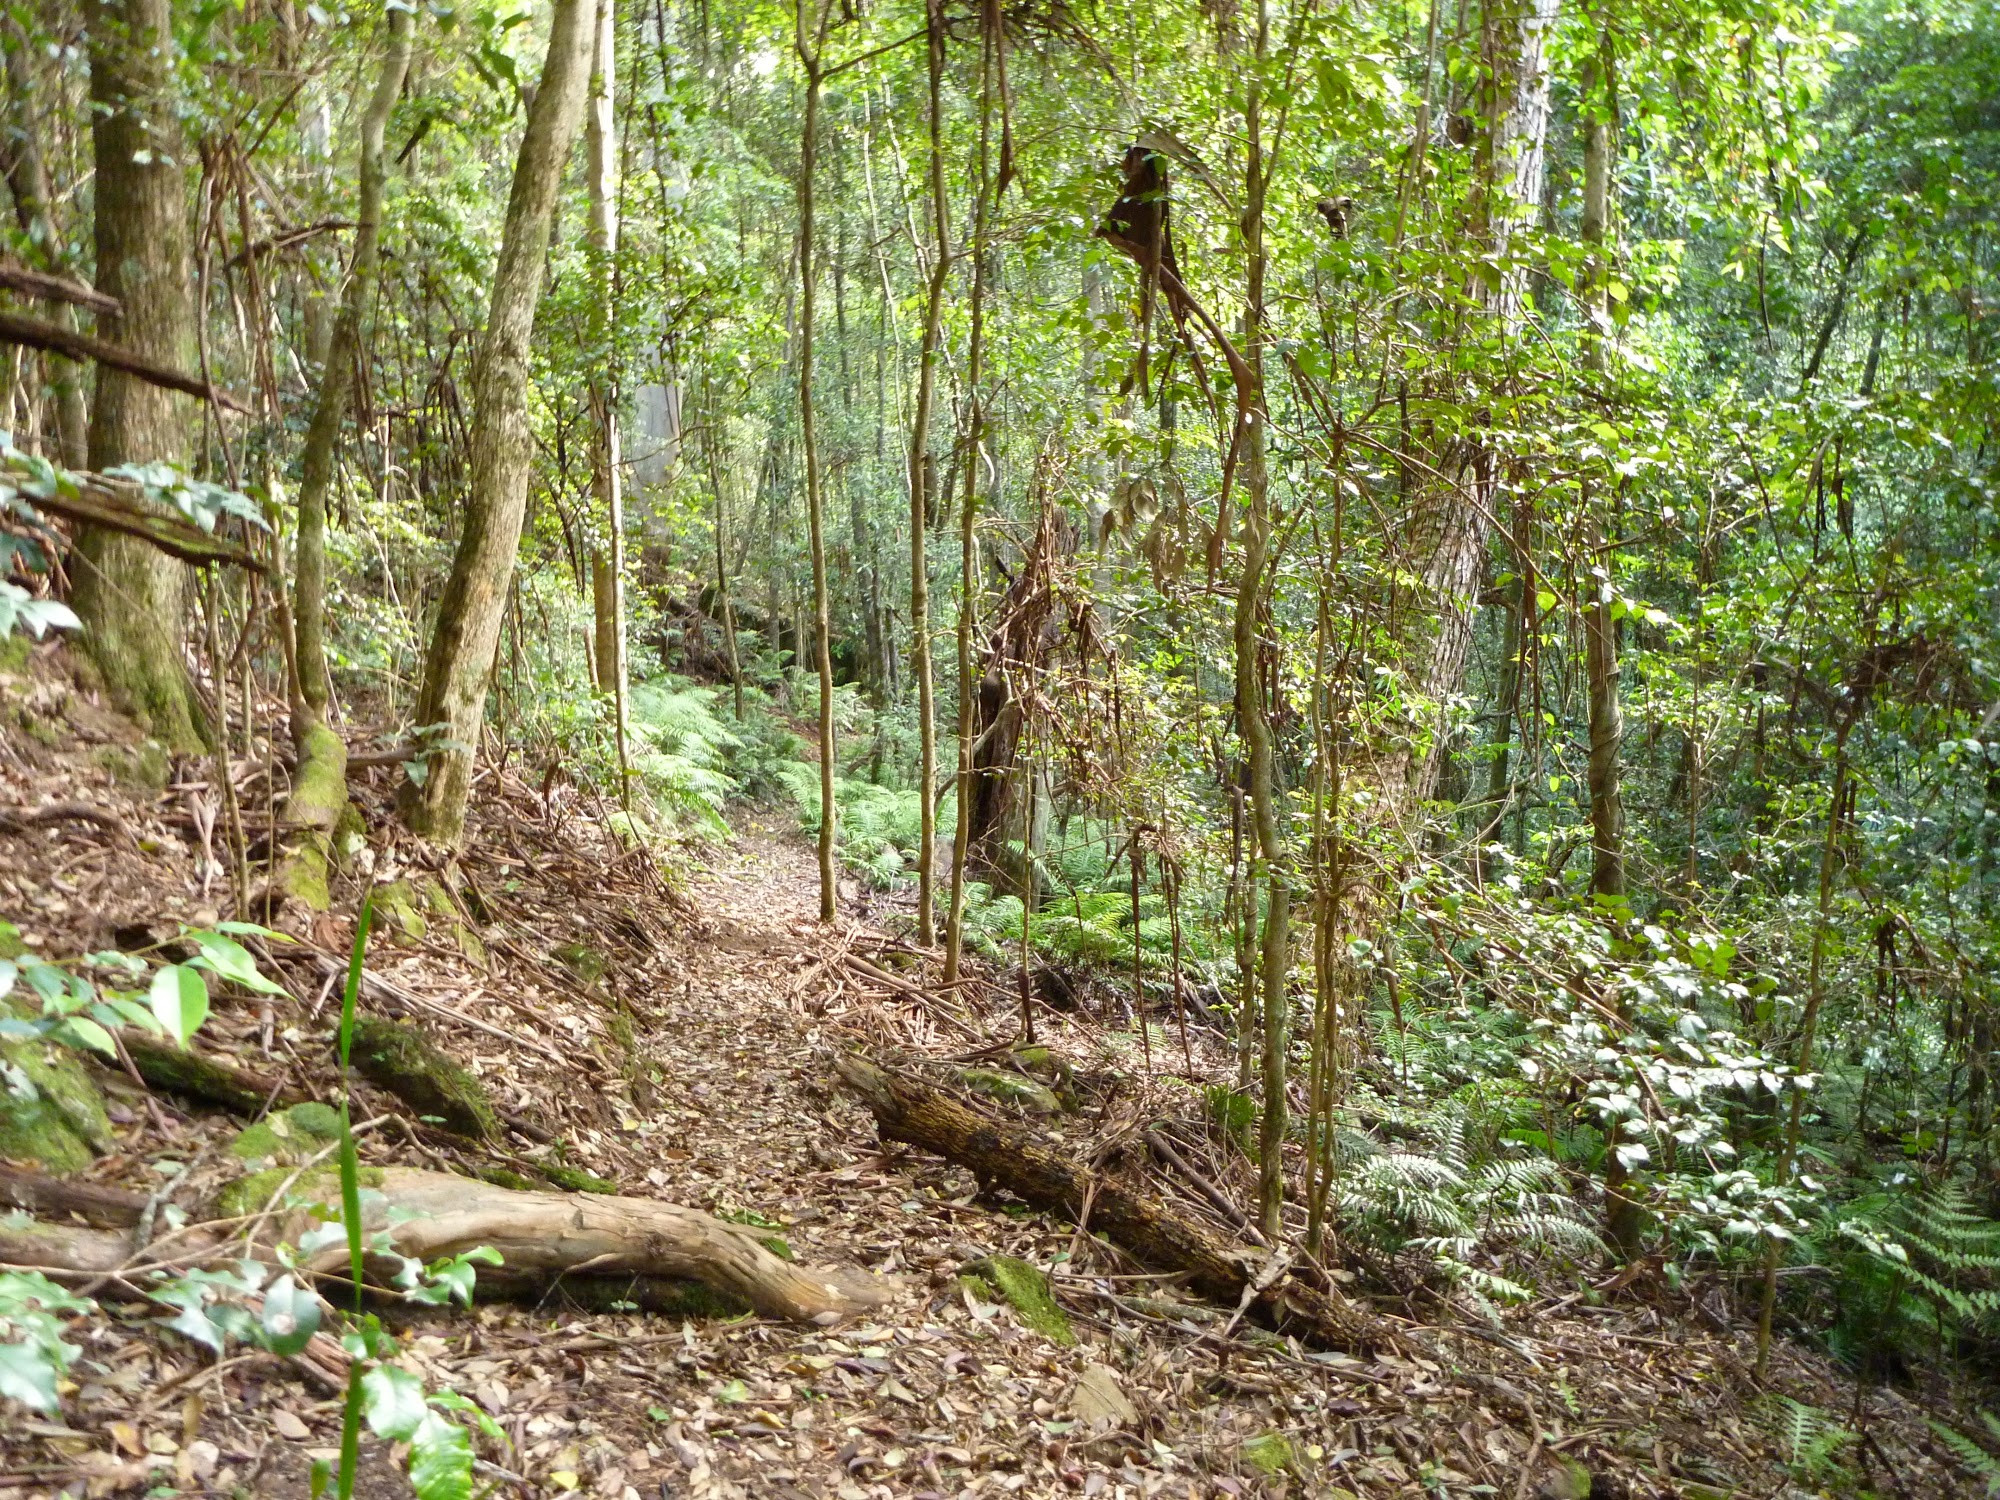 Dense forest on the Lyrebird Trail